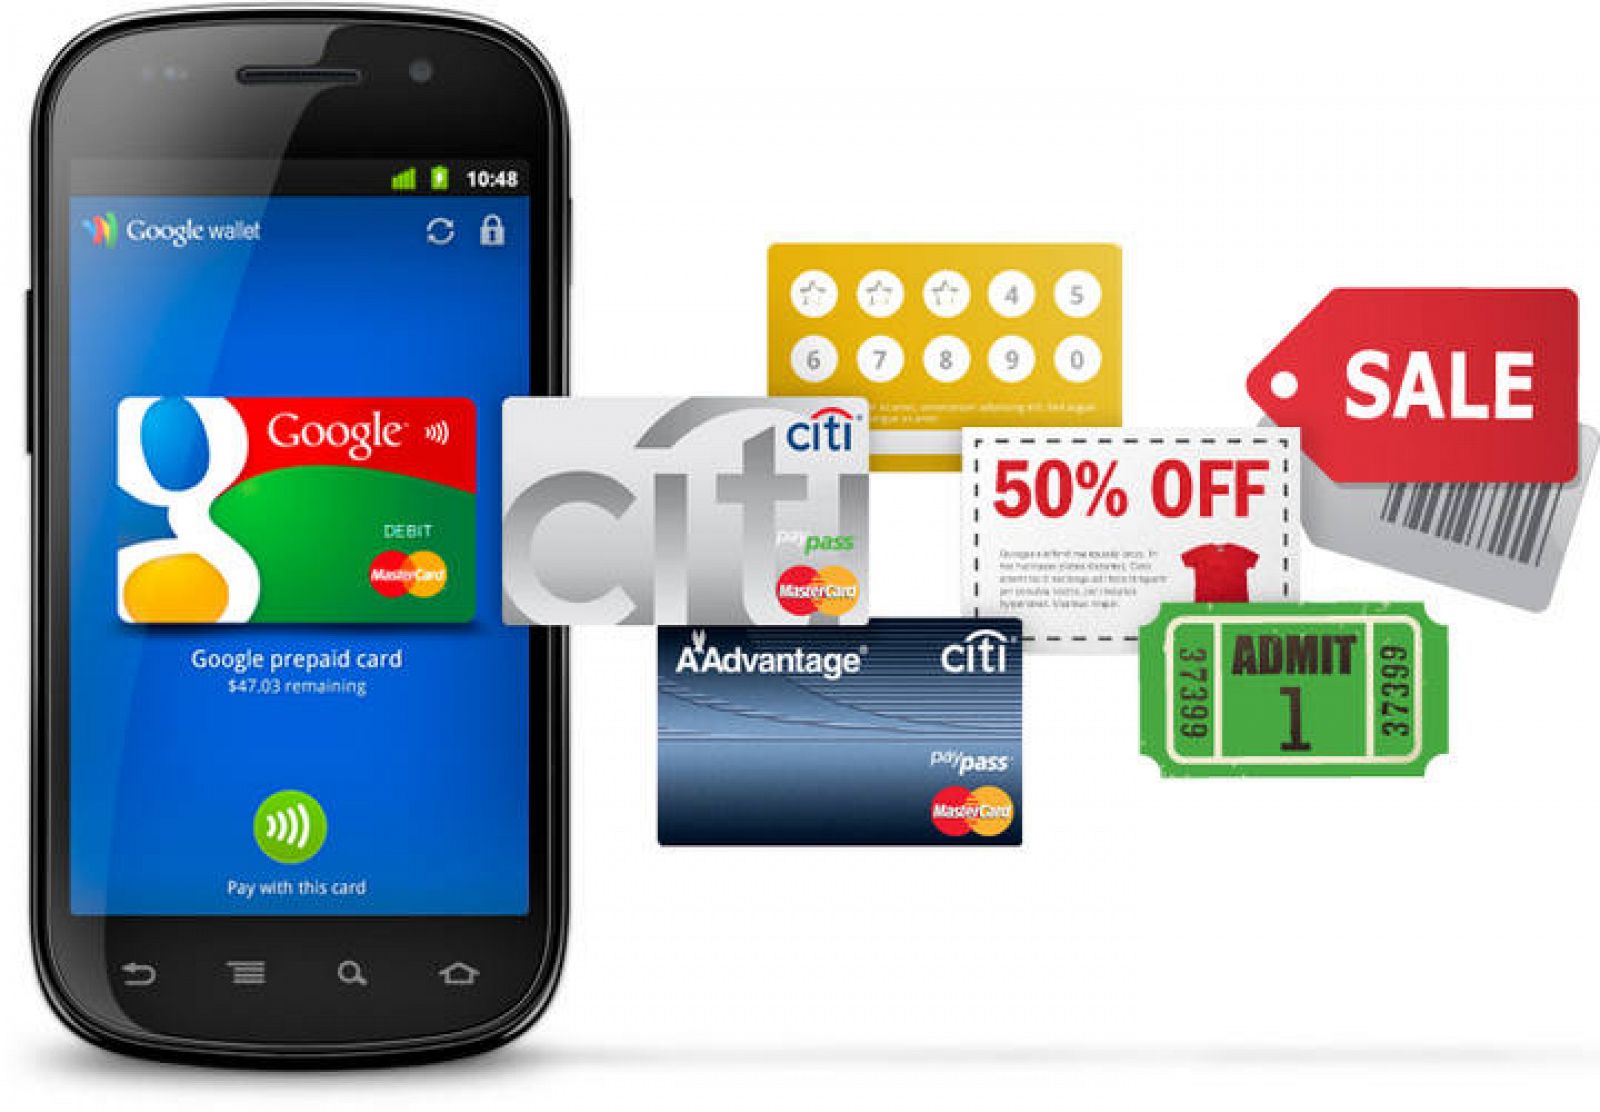 La nueva aplicación, Google Wallet, permitirá el pago con teléfonos móviles de Android